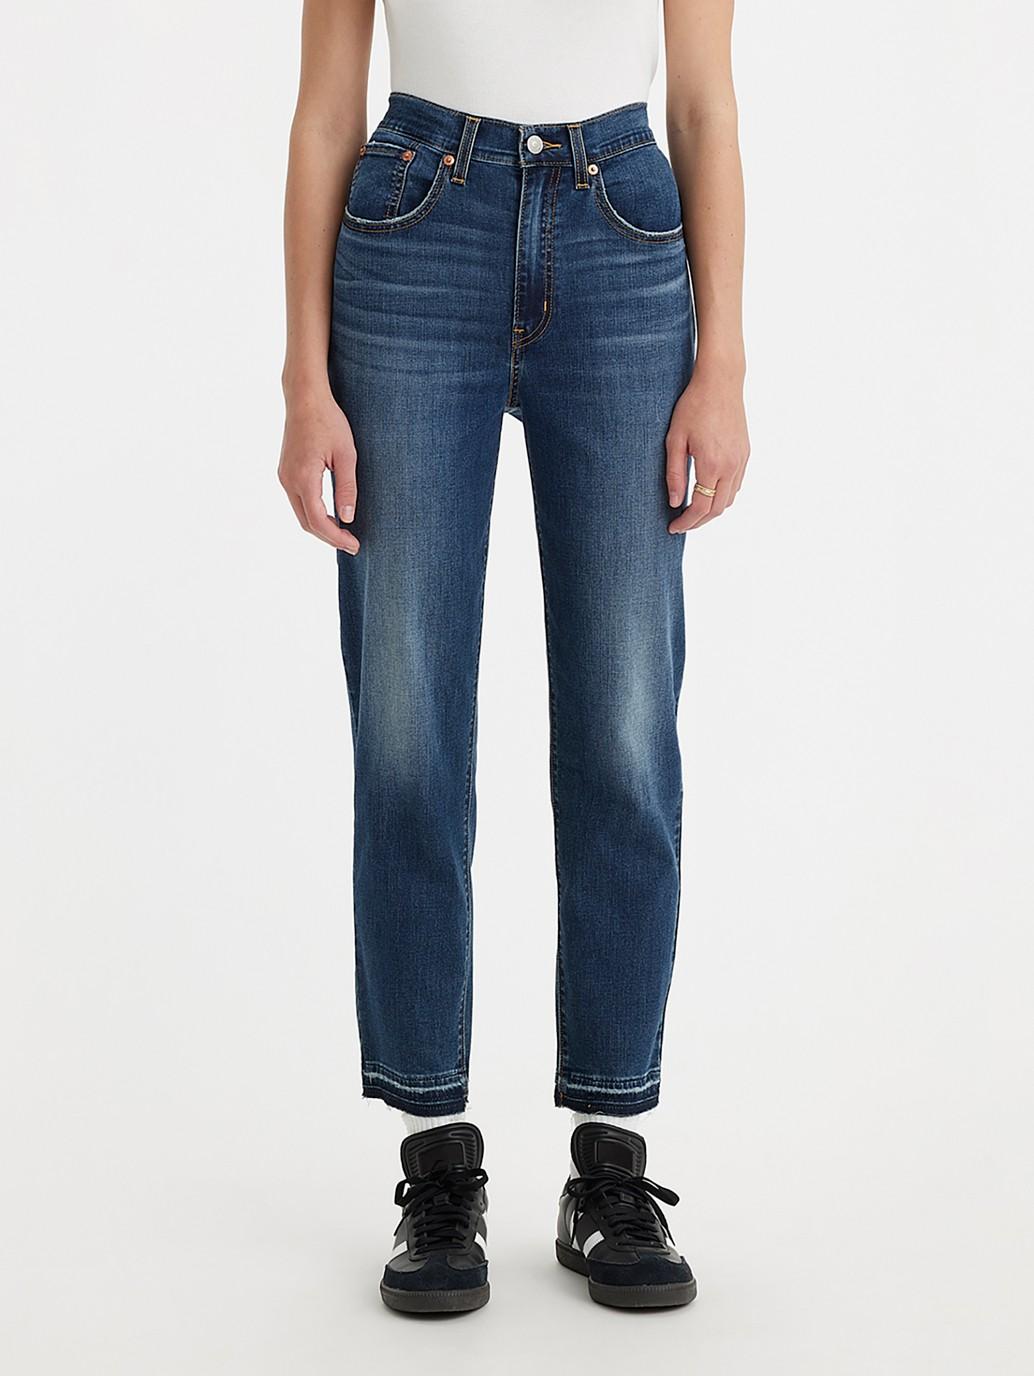 Buy Levi's® Women's High-Rise Boyfriend Jeans | Levi’s® Official Online ...